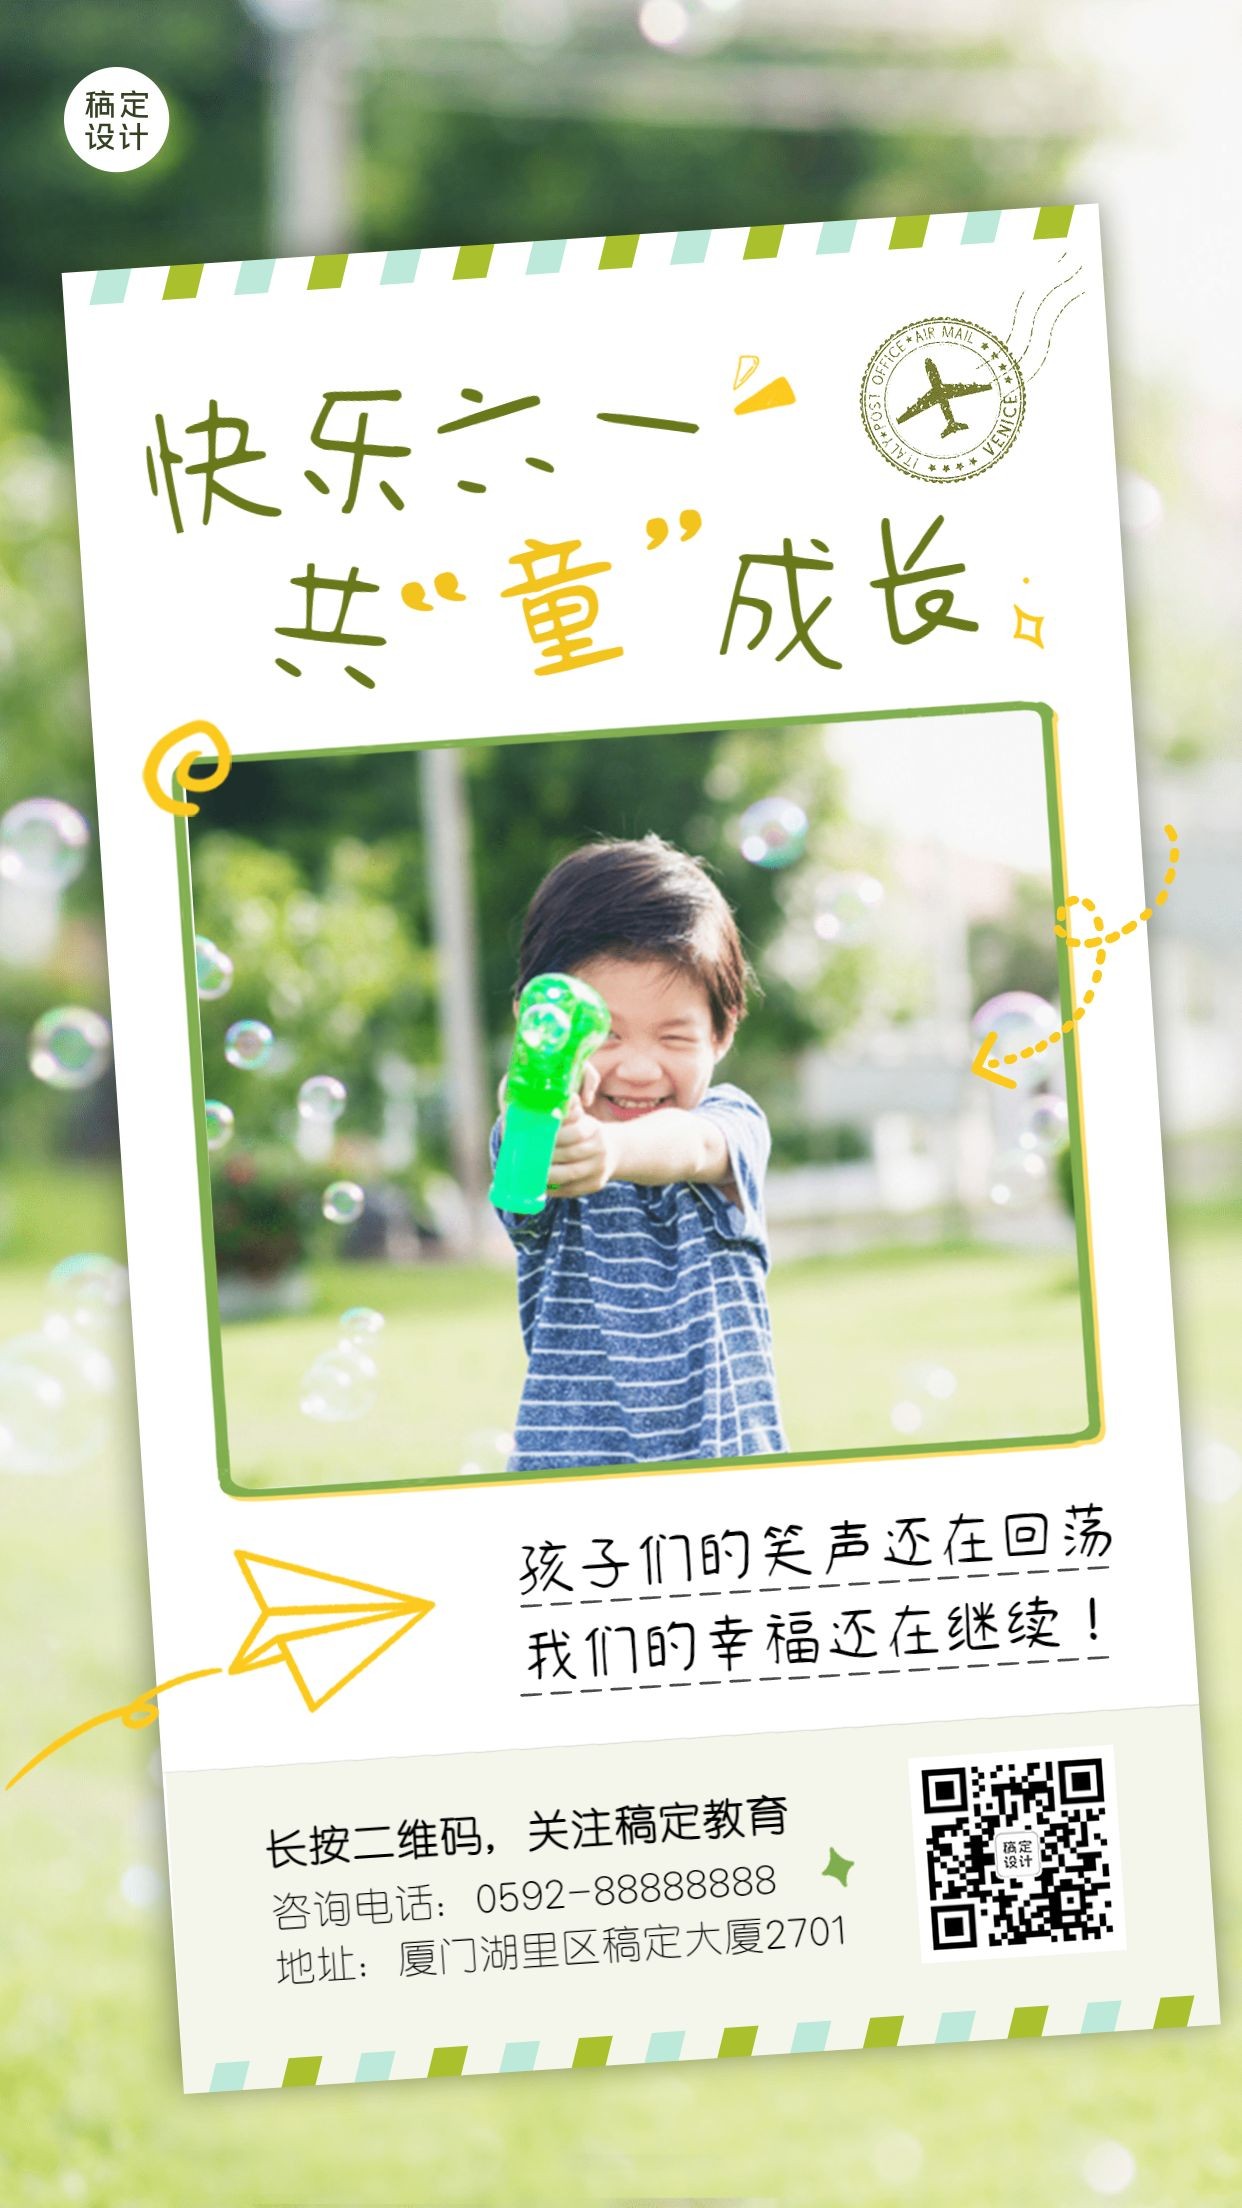 六一儿童节活动回顾晒图活动手机海报